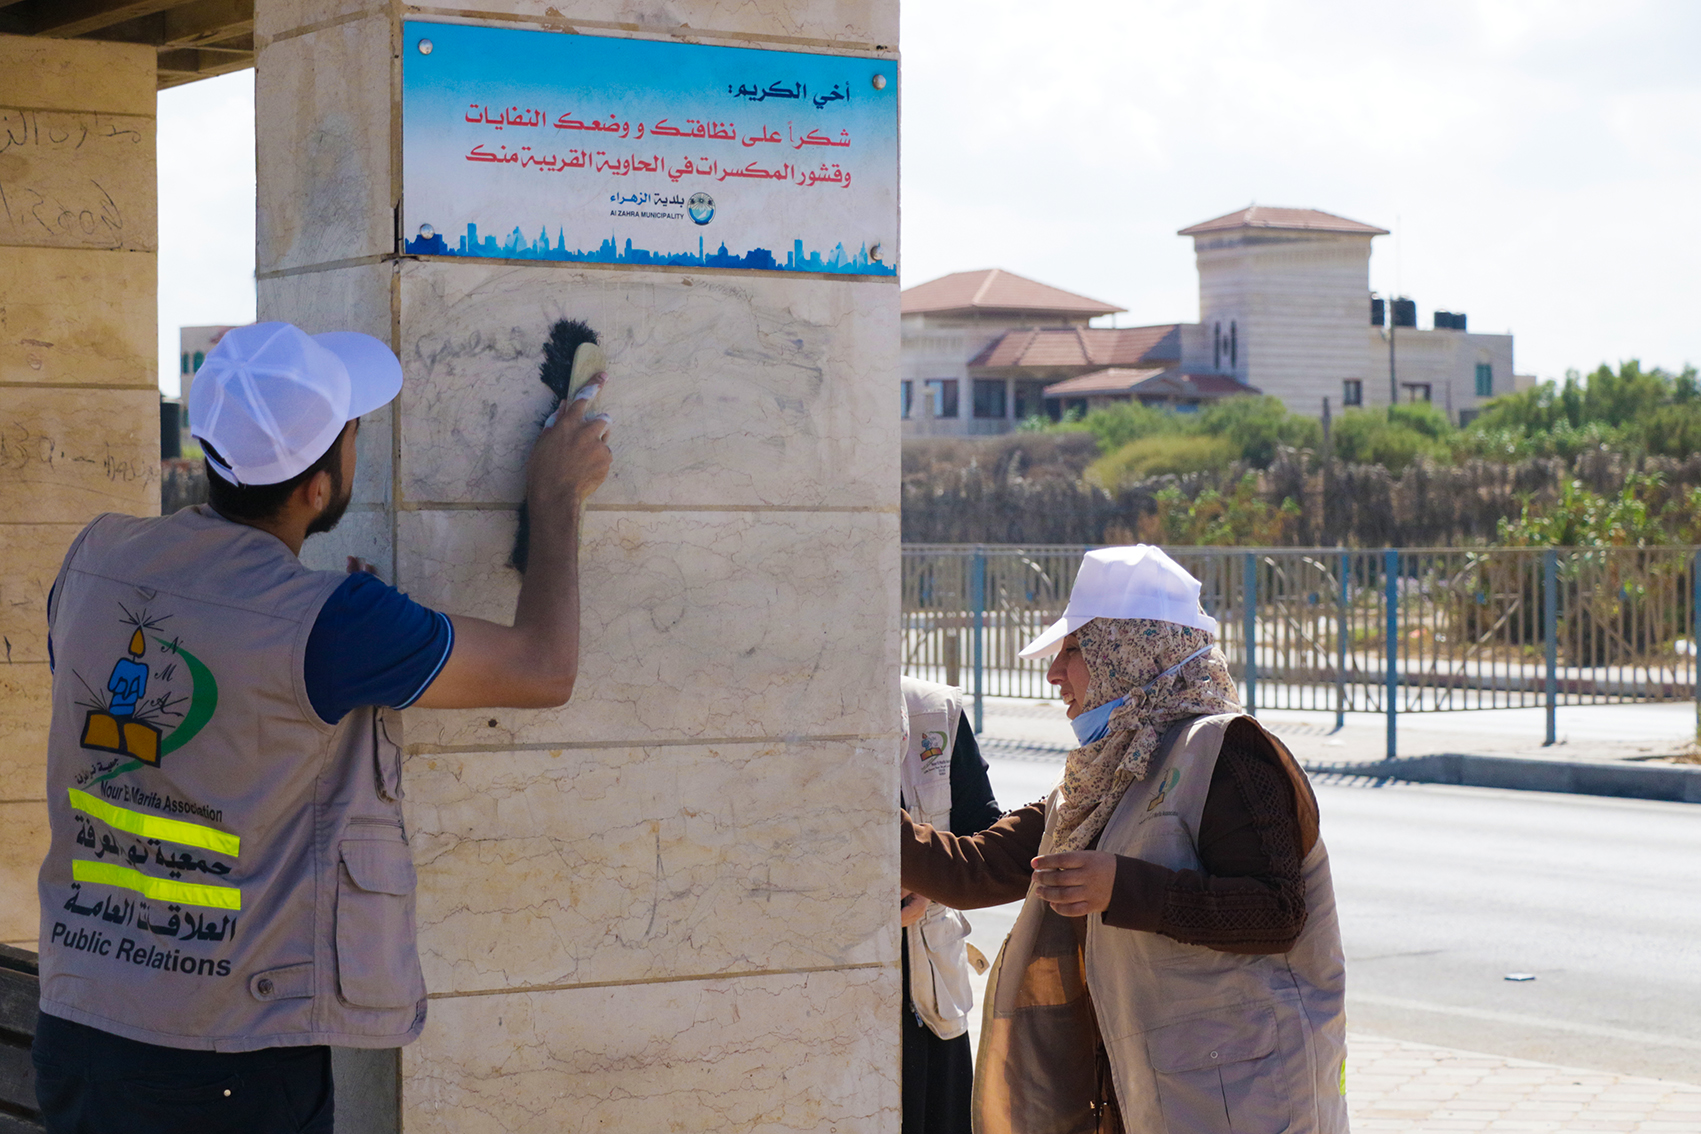 بلدية الزهراء وجمعية نور المعرفة تنفذان حملة لتنظيف شاطئ المدينة